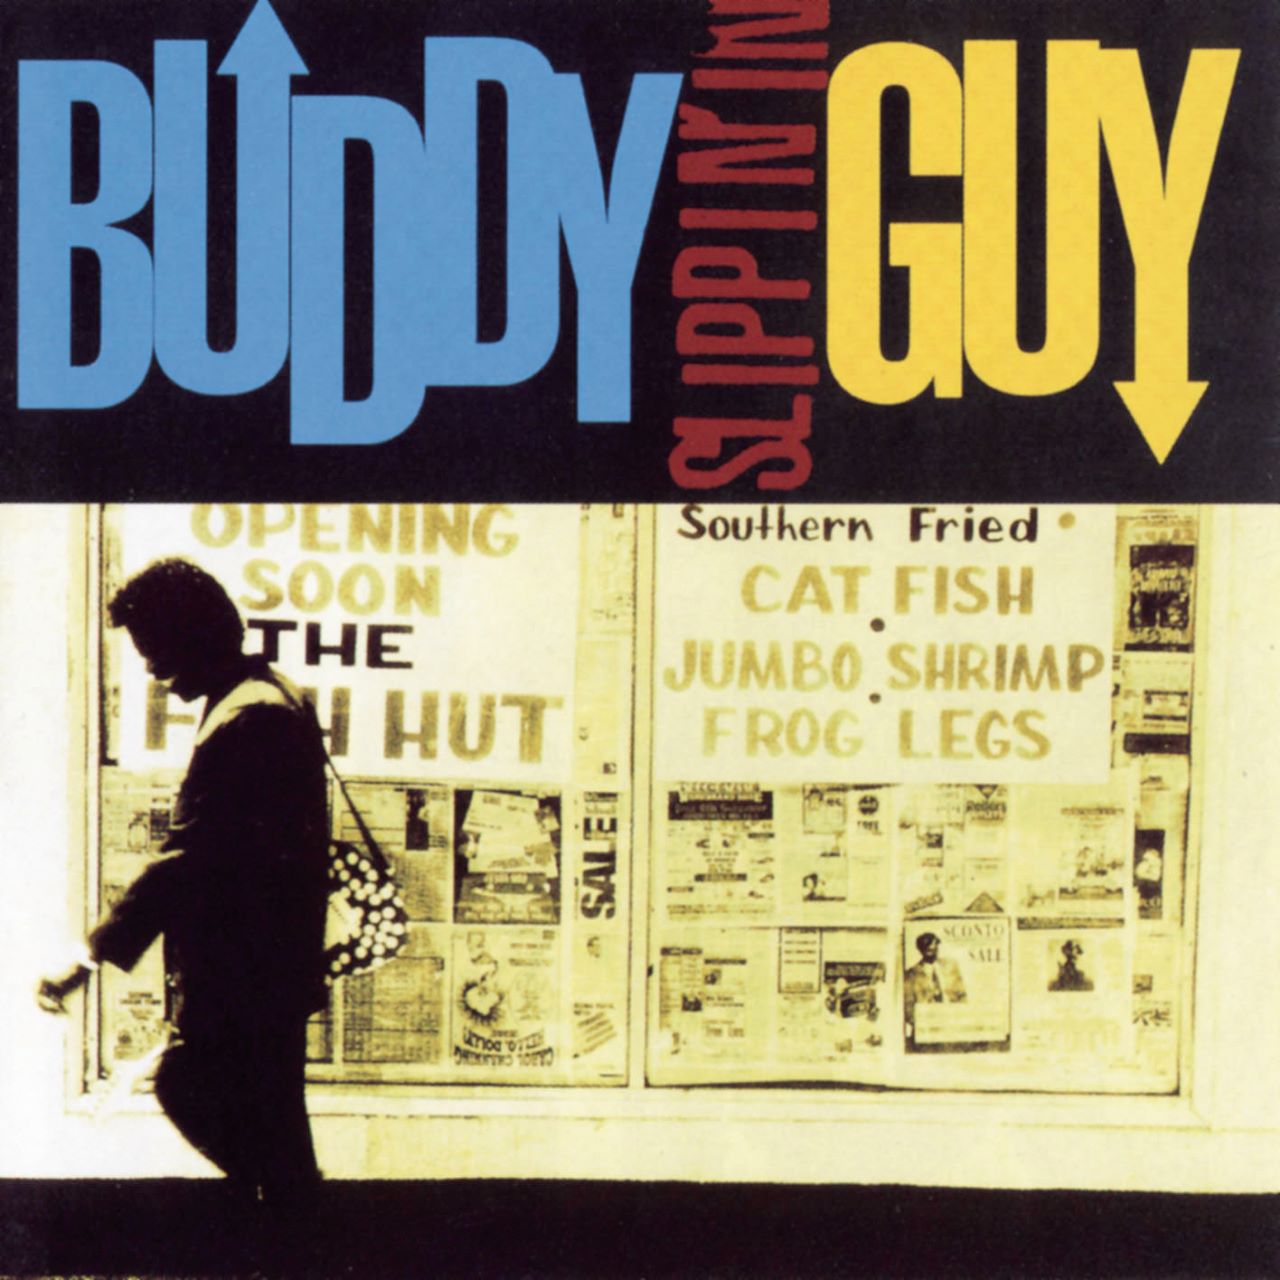 Buddy Guy - Slippin’ In cover album